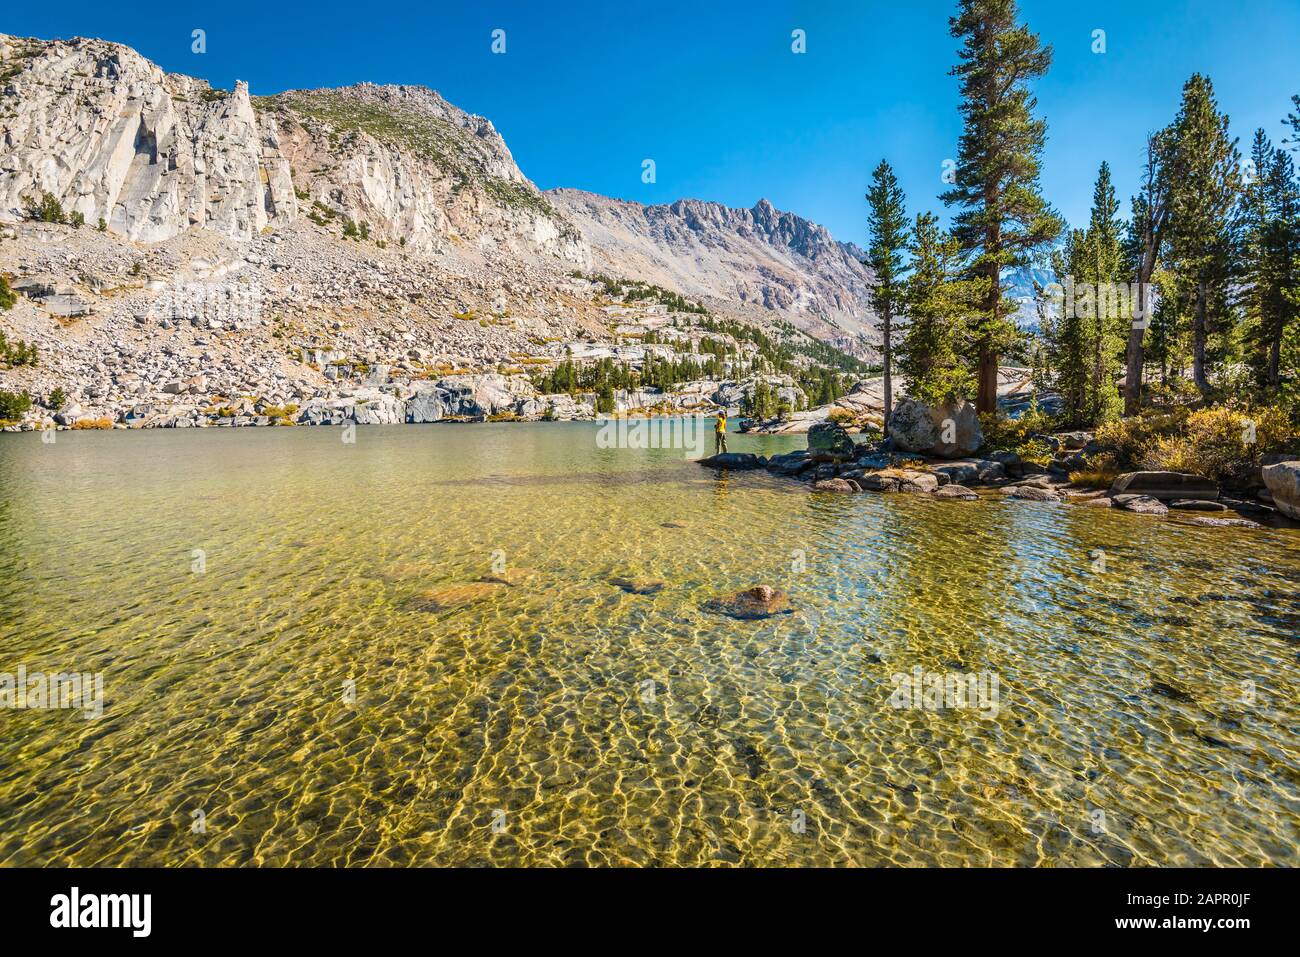 Un randonneur se dresse le long de la rive du lac Blue, John Muir Wilderness, Californie. Les pics de montagne de cisaillement entourent le lac bleu-vert. Banque D'Images